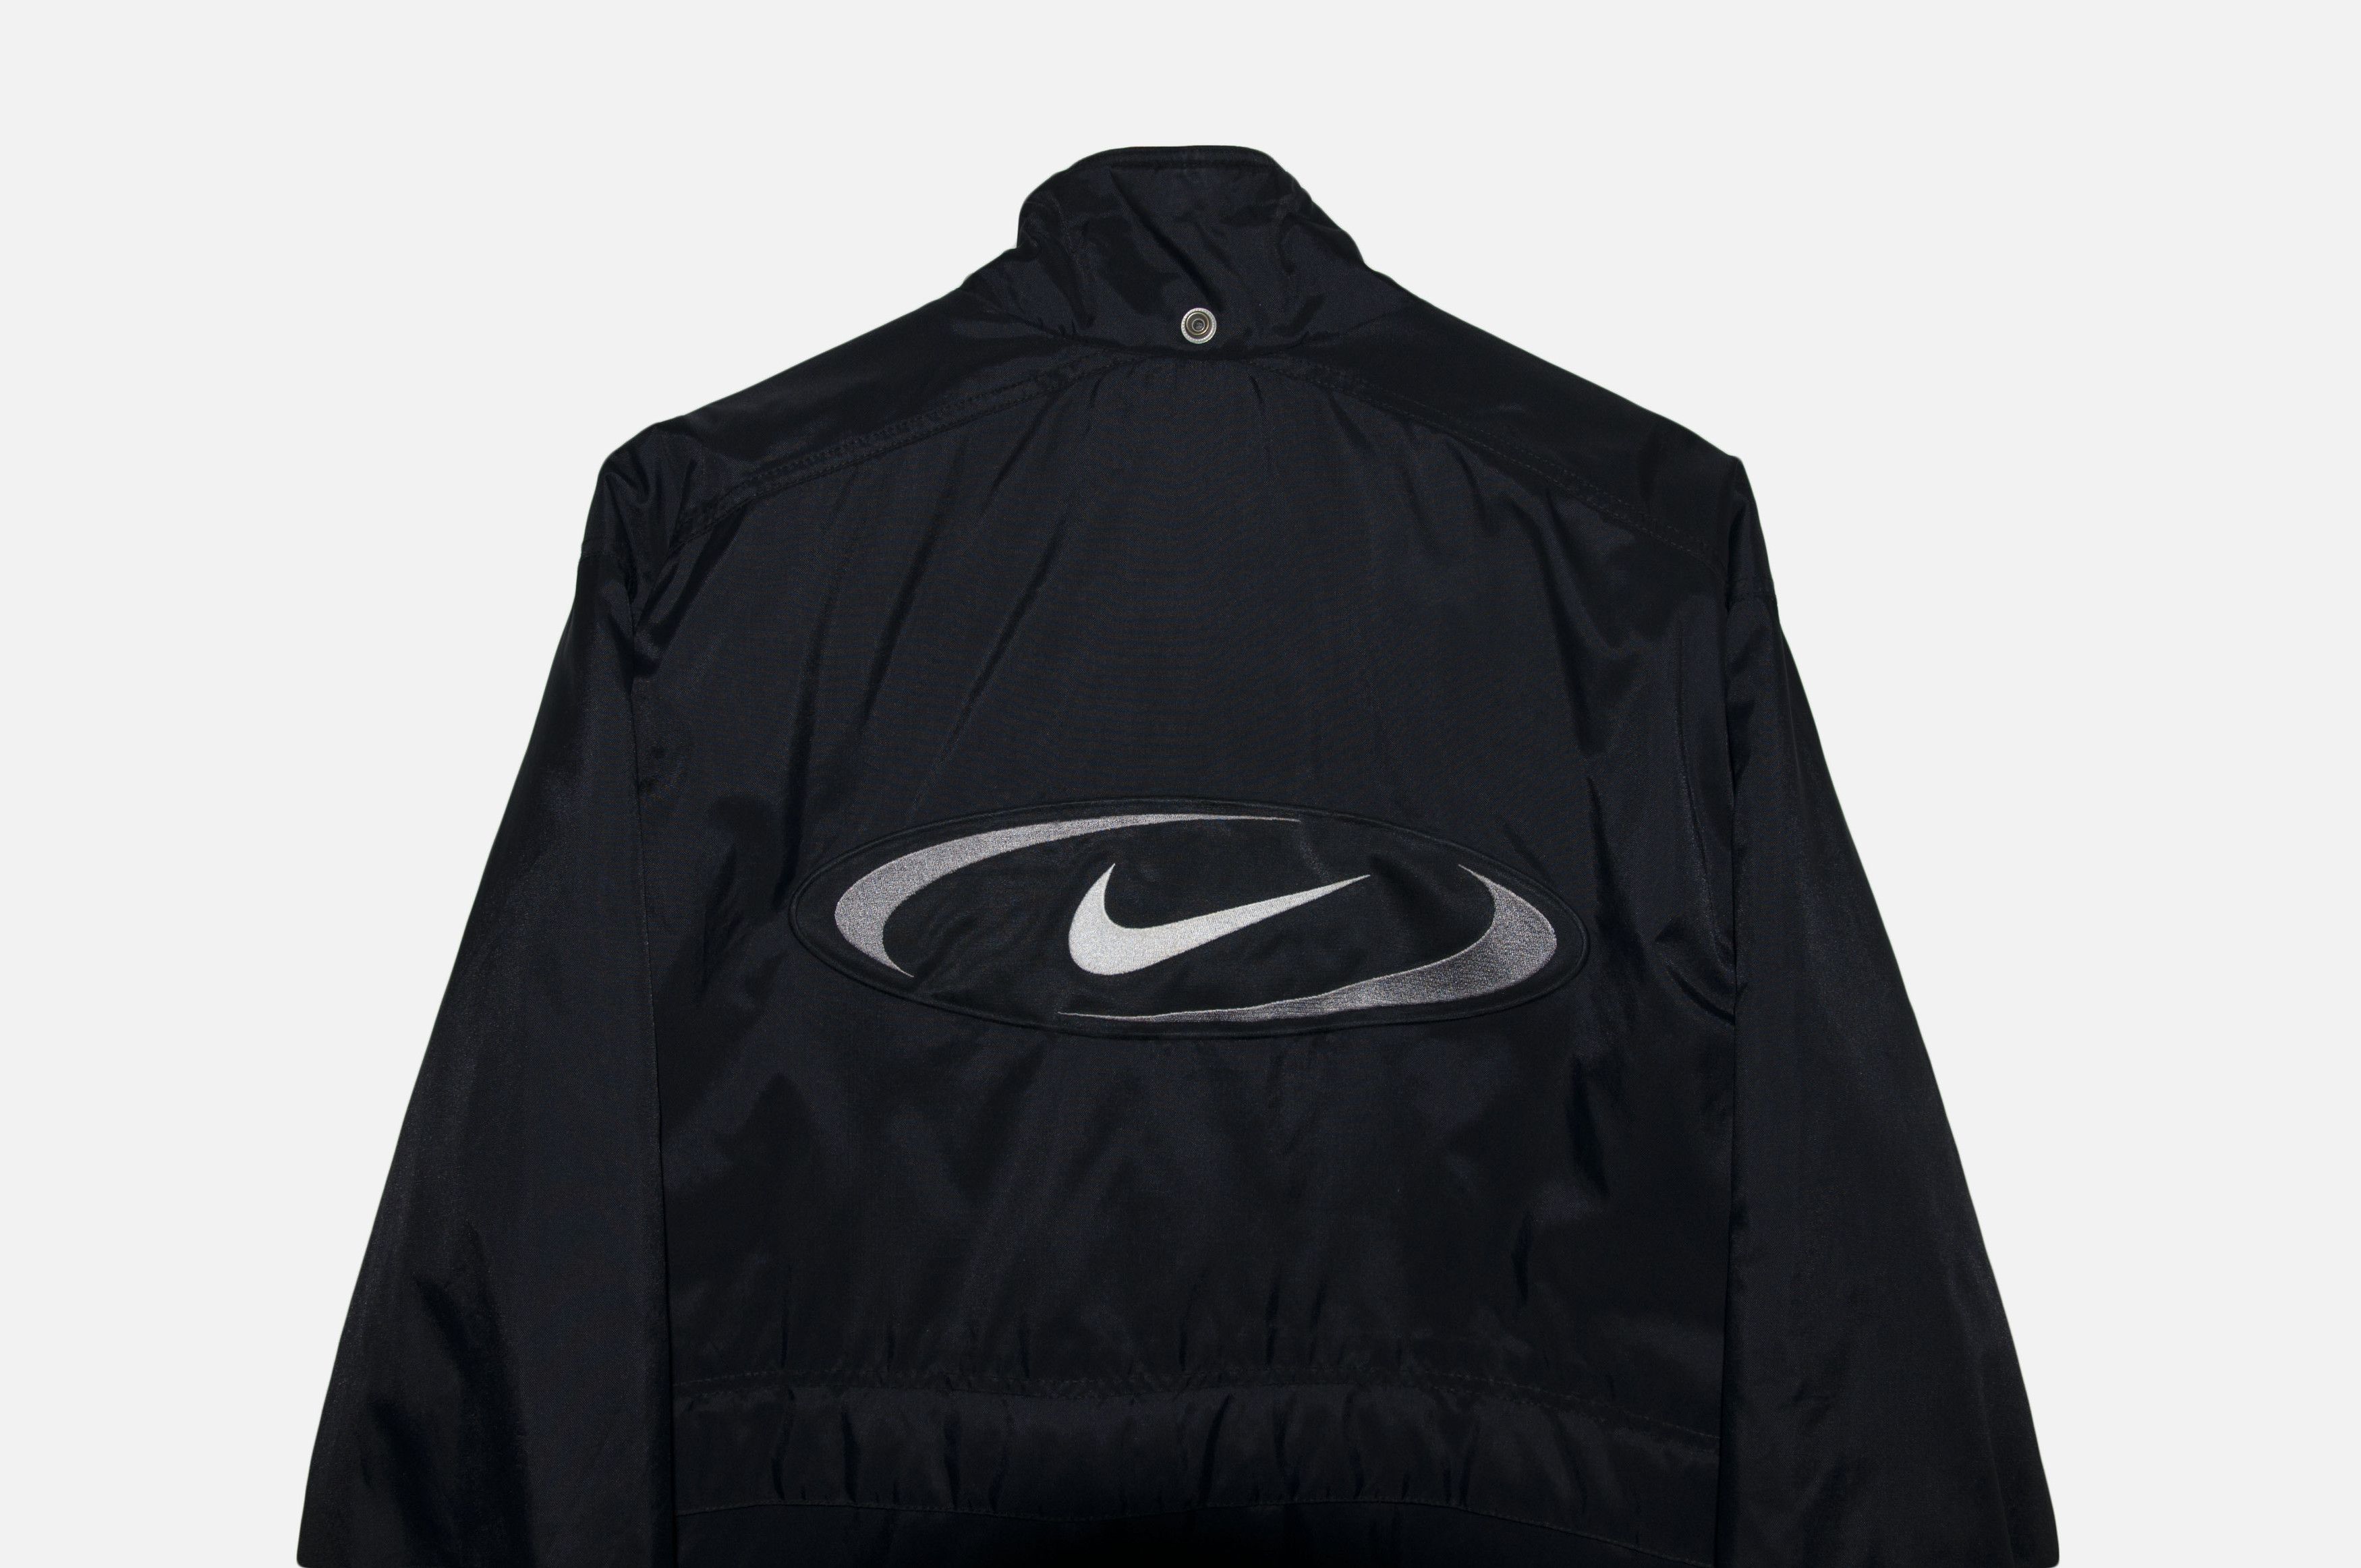 Nike vintage Nike mens Nylon Track Jacket Black White Retro 90s Size US S / EU 44-46 / 1 - 2 Preview